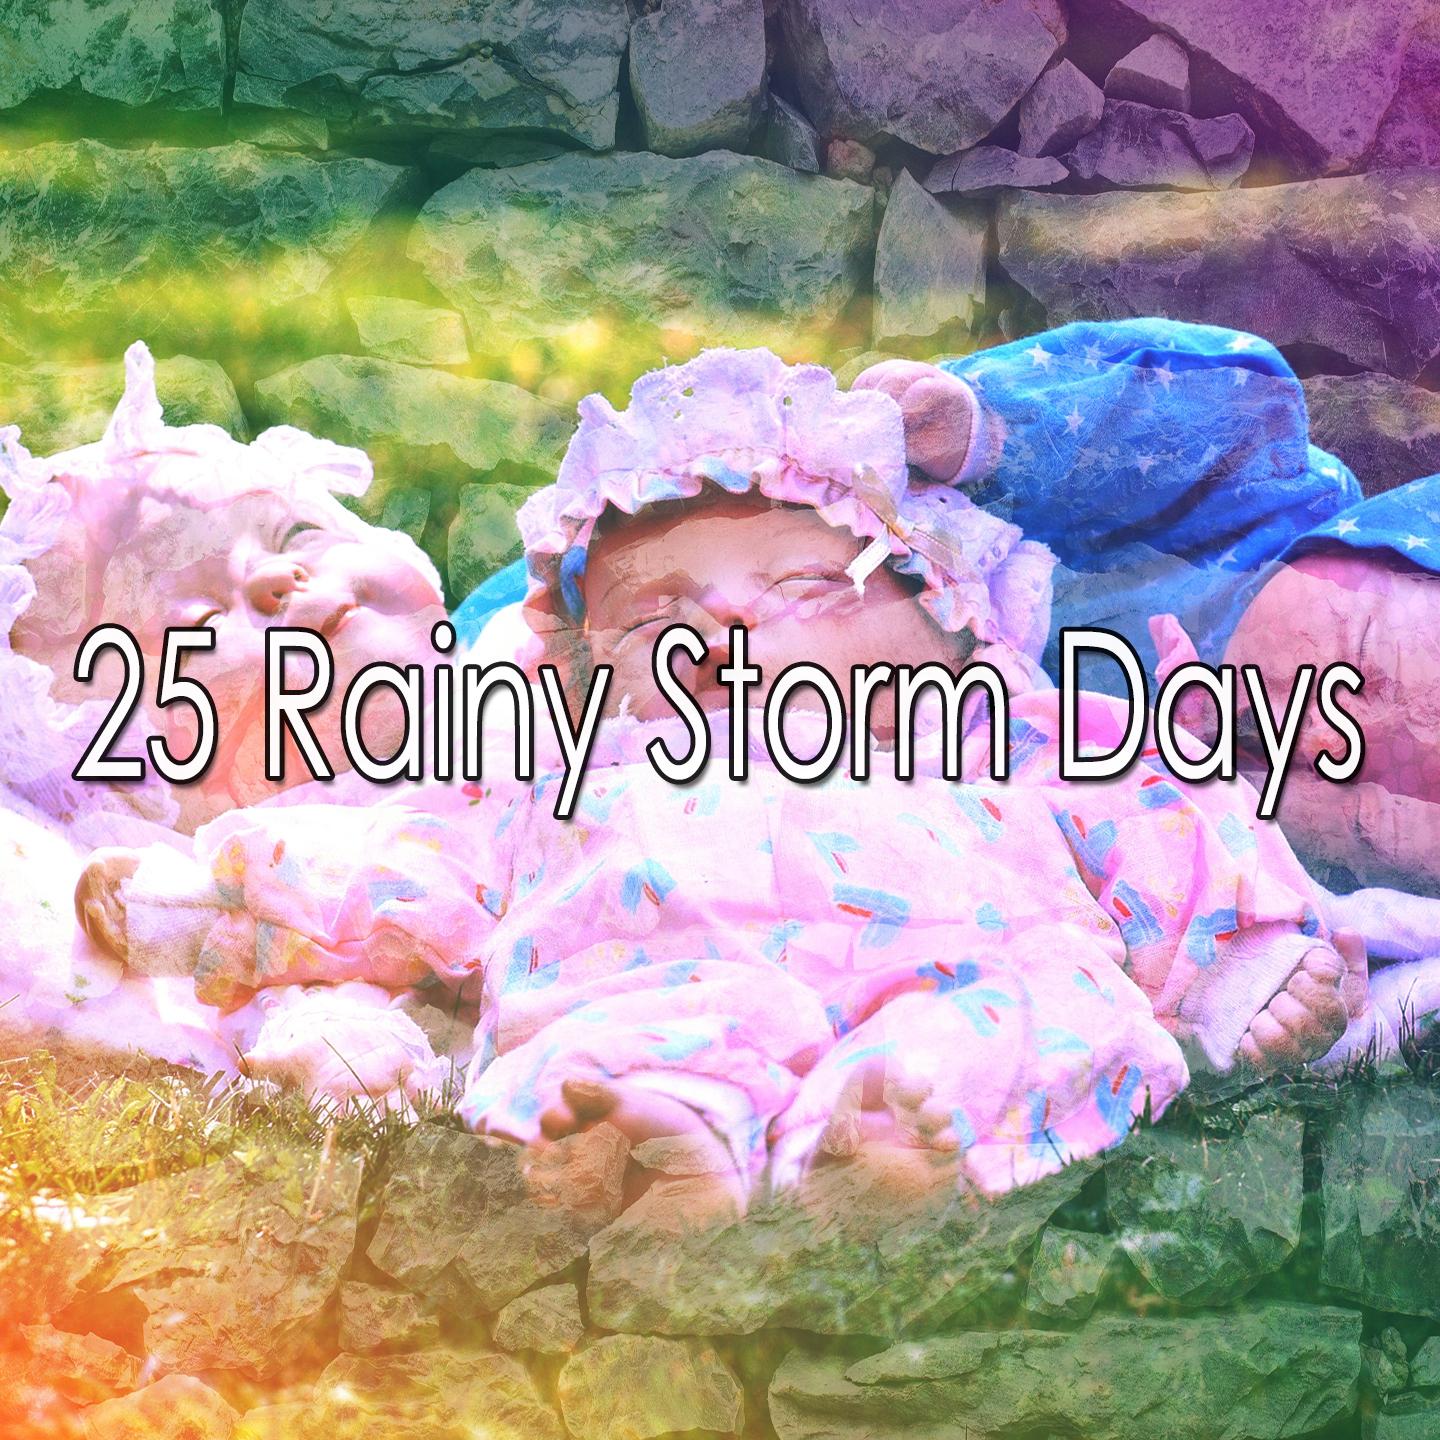 25 Rainy Storm Days